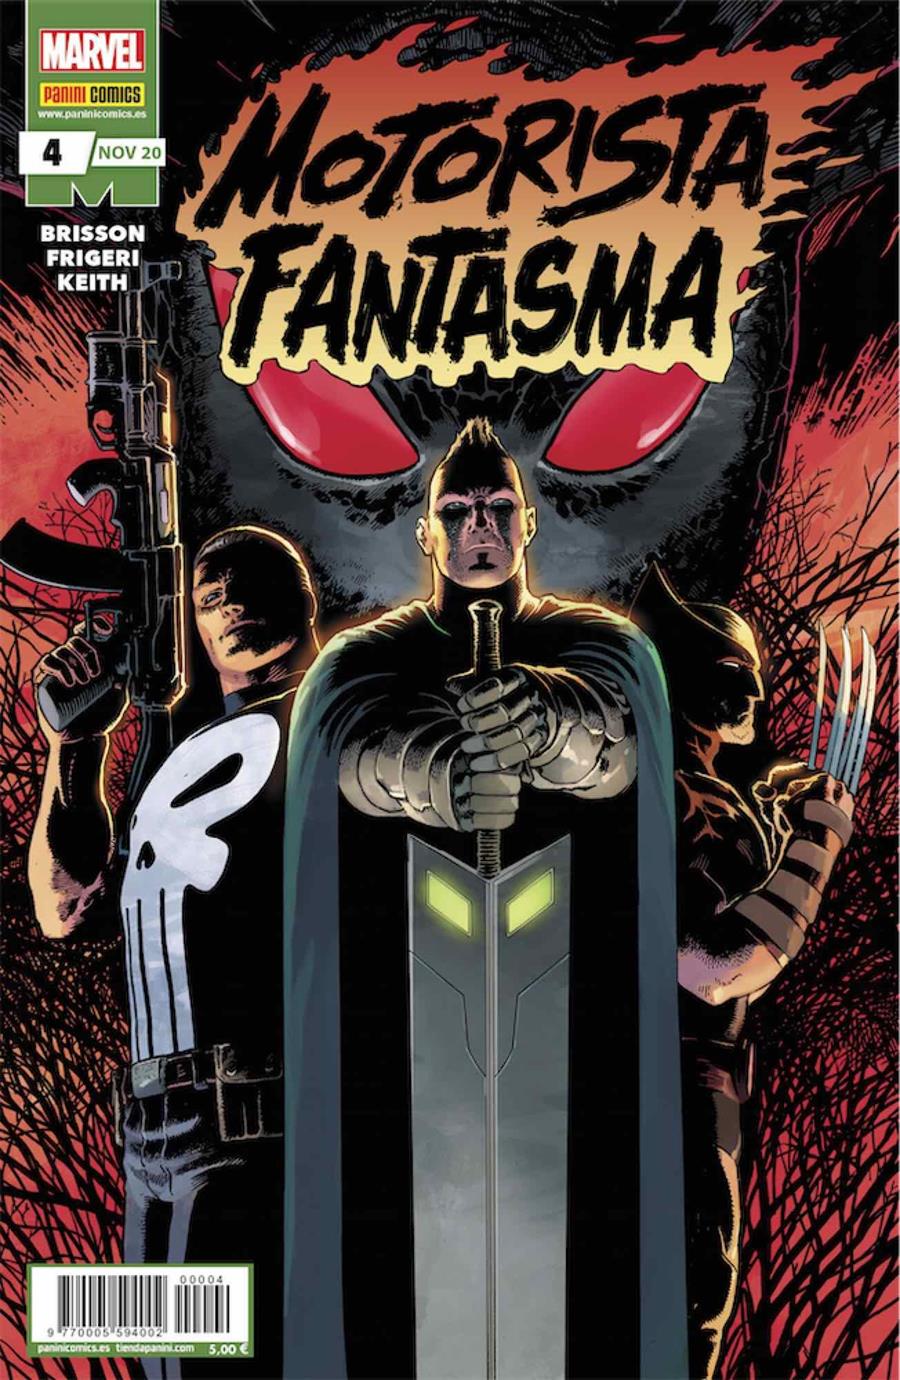 Motorista Fantasma 4 | N1120-PAN55 | Ed Brisson, Juan Frigeri | Terra de Còmic - Tu tienda de cómics online especializada en cómics, manga y merchandising